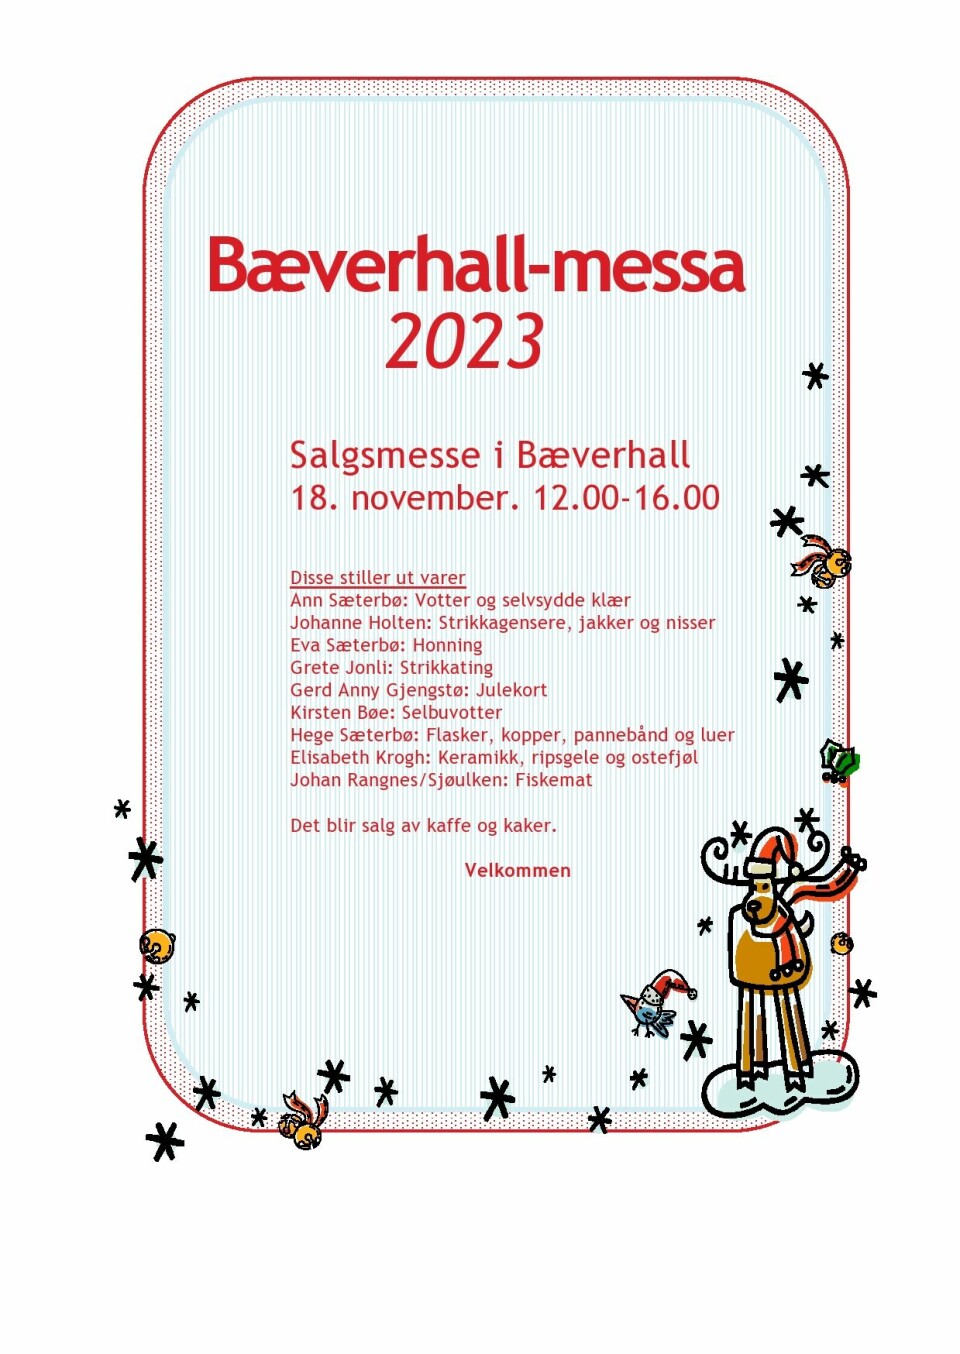 Plakat for Bæverhall-messa 2023. 18. november 12.00 til 16.00